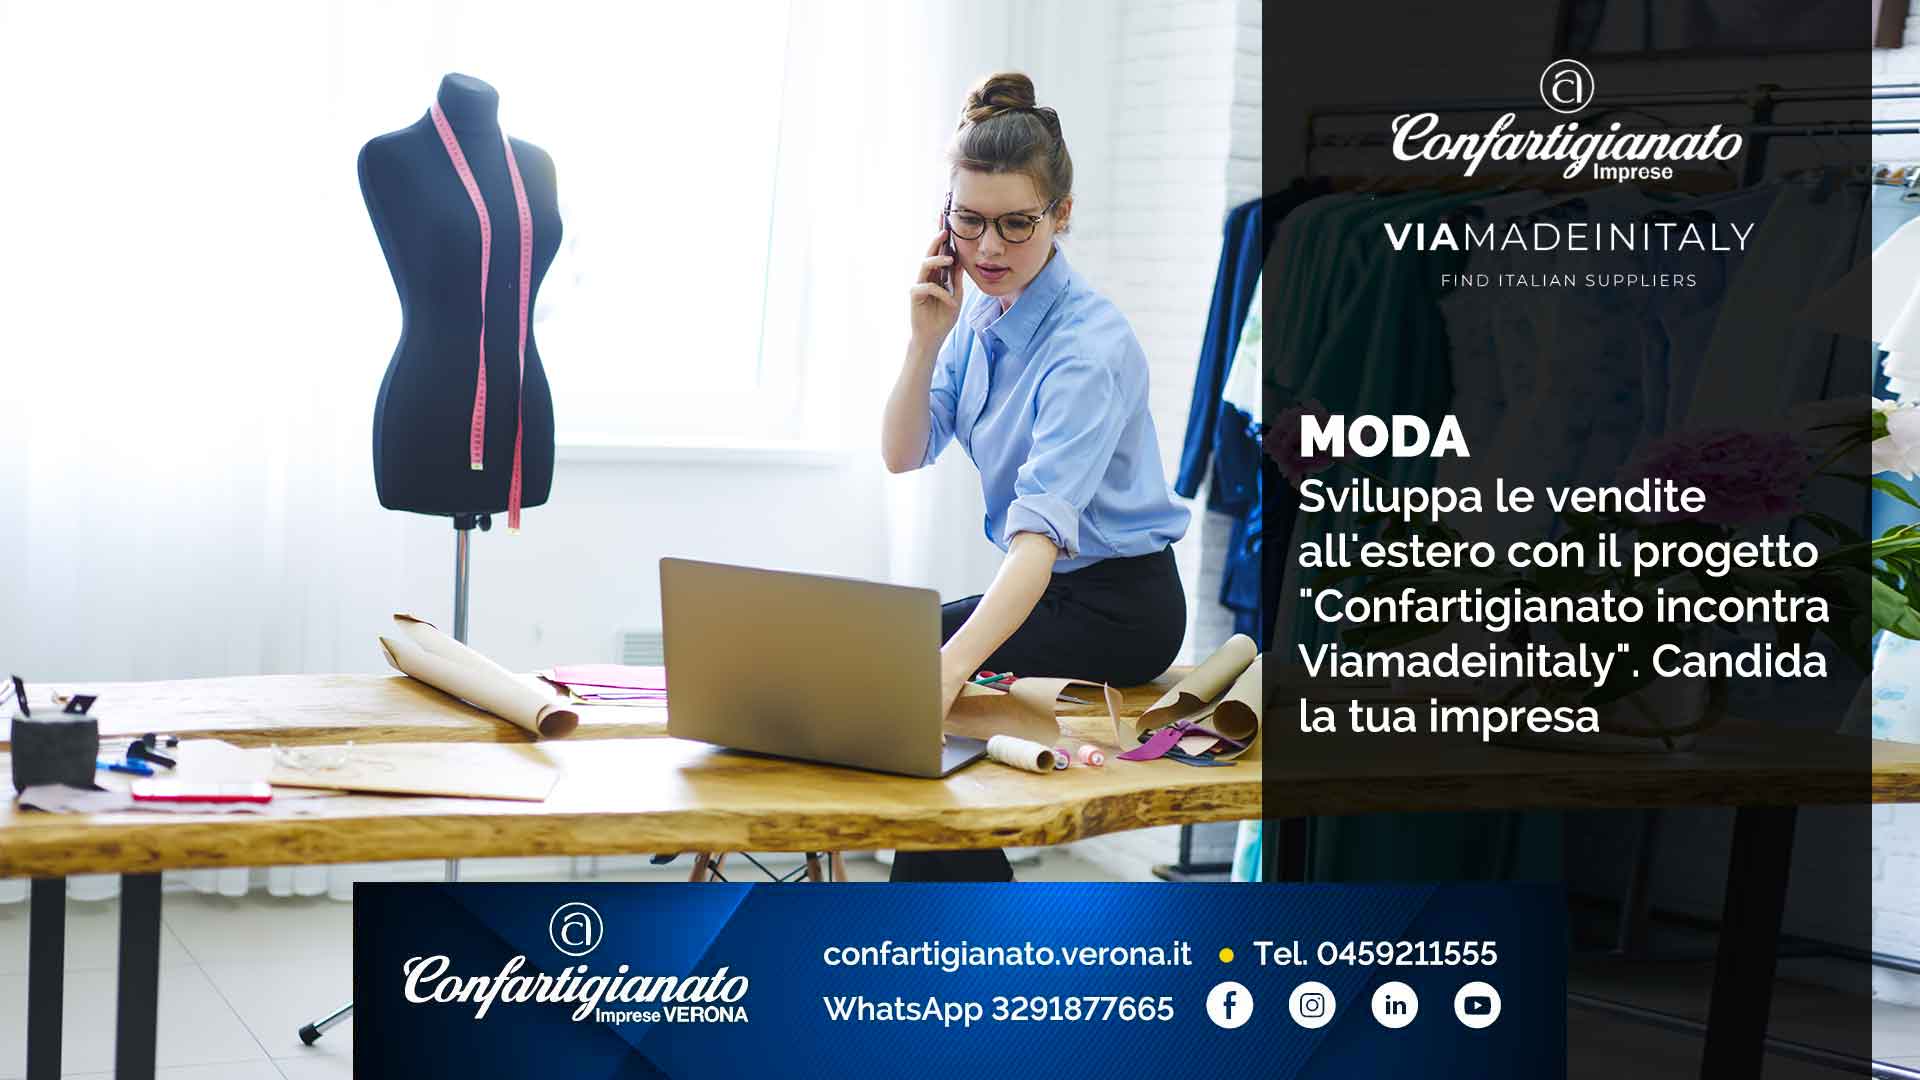 MODA – Sviluppa le vendite all'estero con il progetto "Confartigianato incontra Viamadeinitaly". Candida la tua impresa